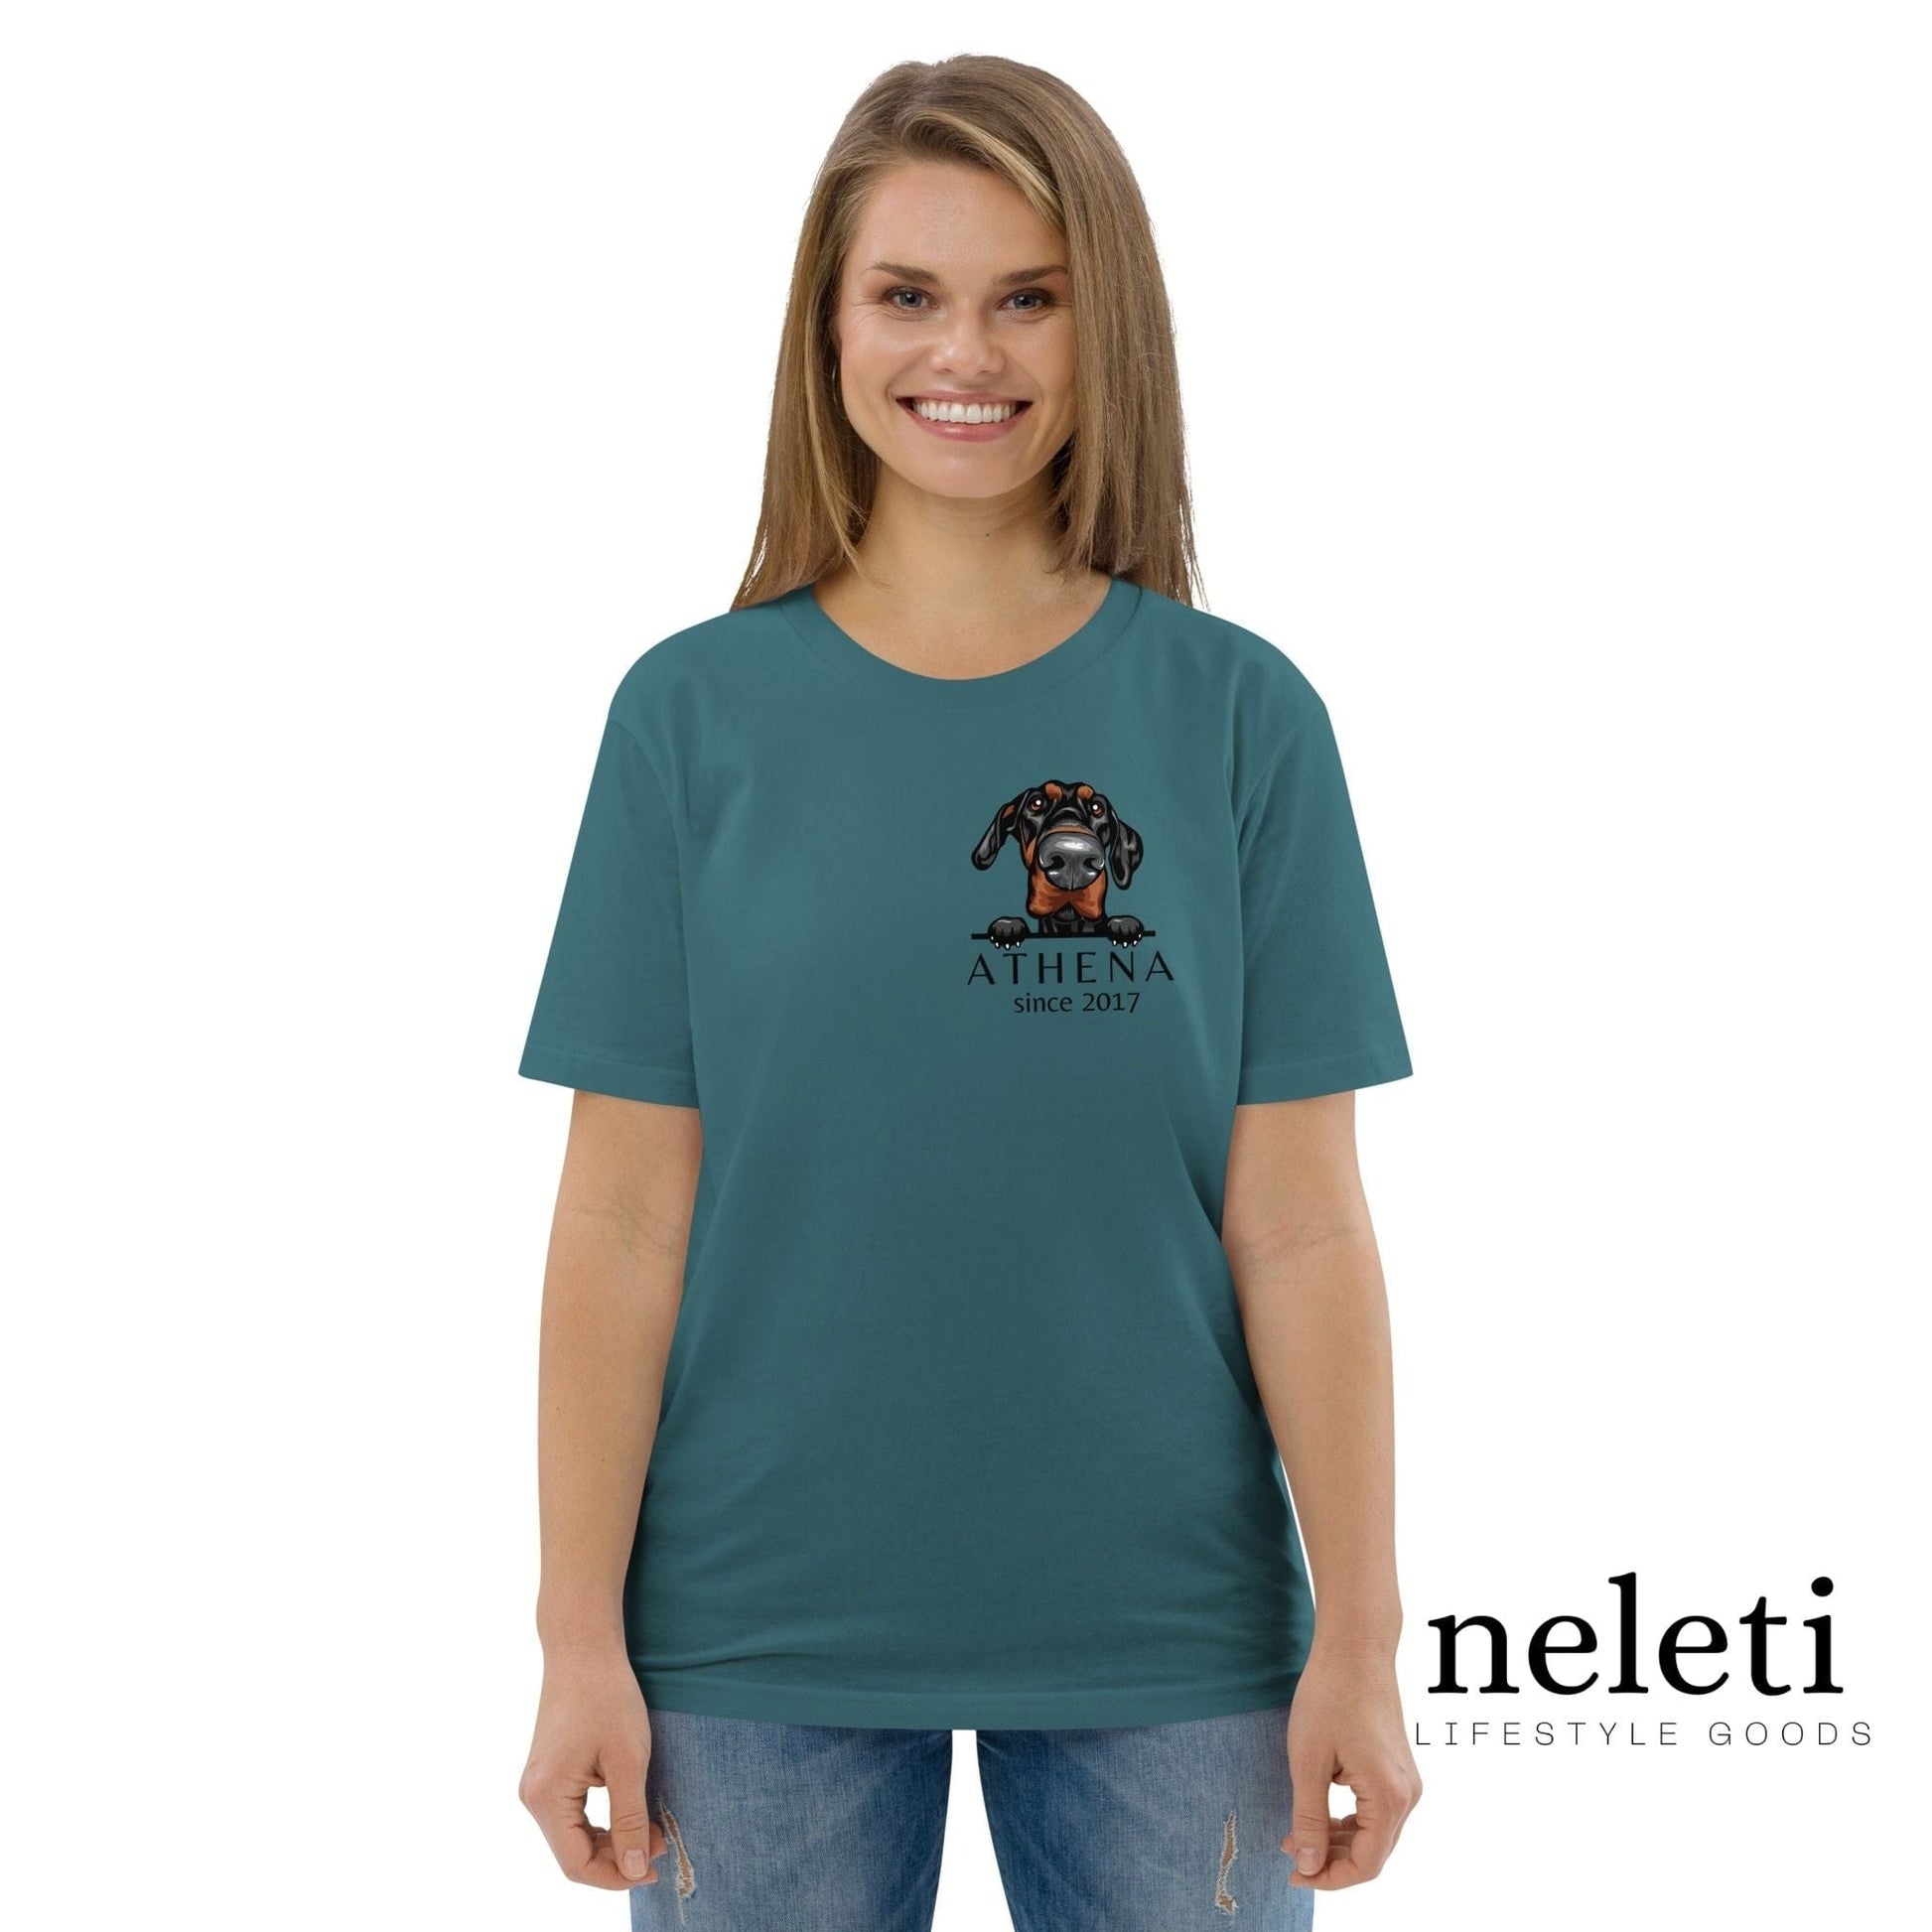 neleti.com-custom-star-gazer-shirt-for-dog-mom